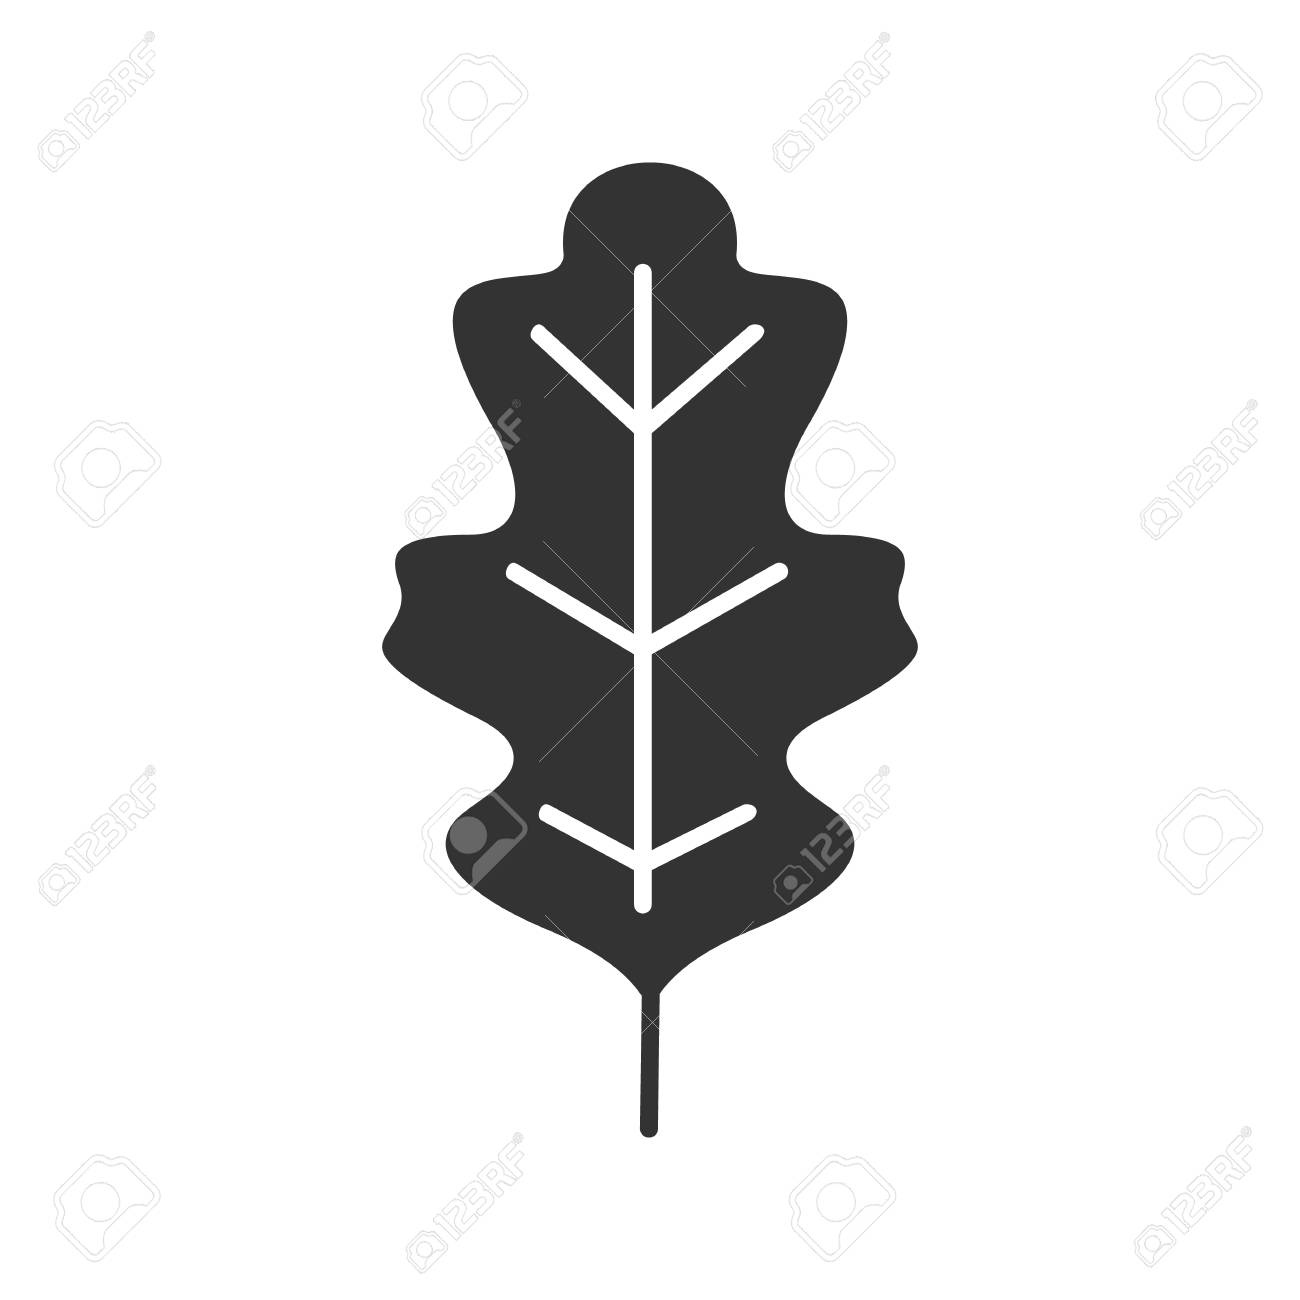 Gray leaf 2 icon - Free gray leaf icons